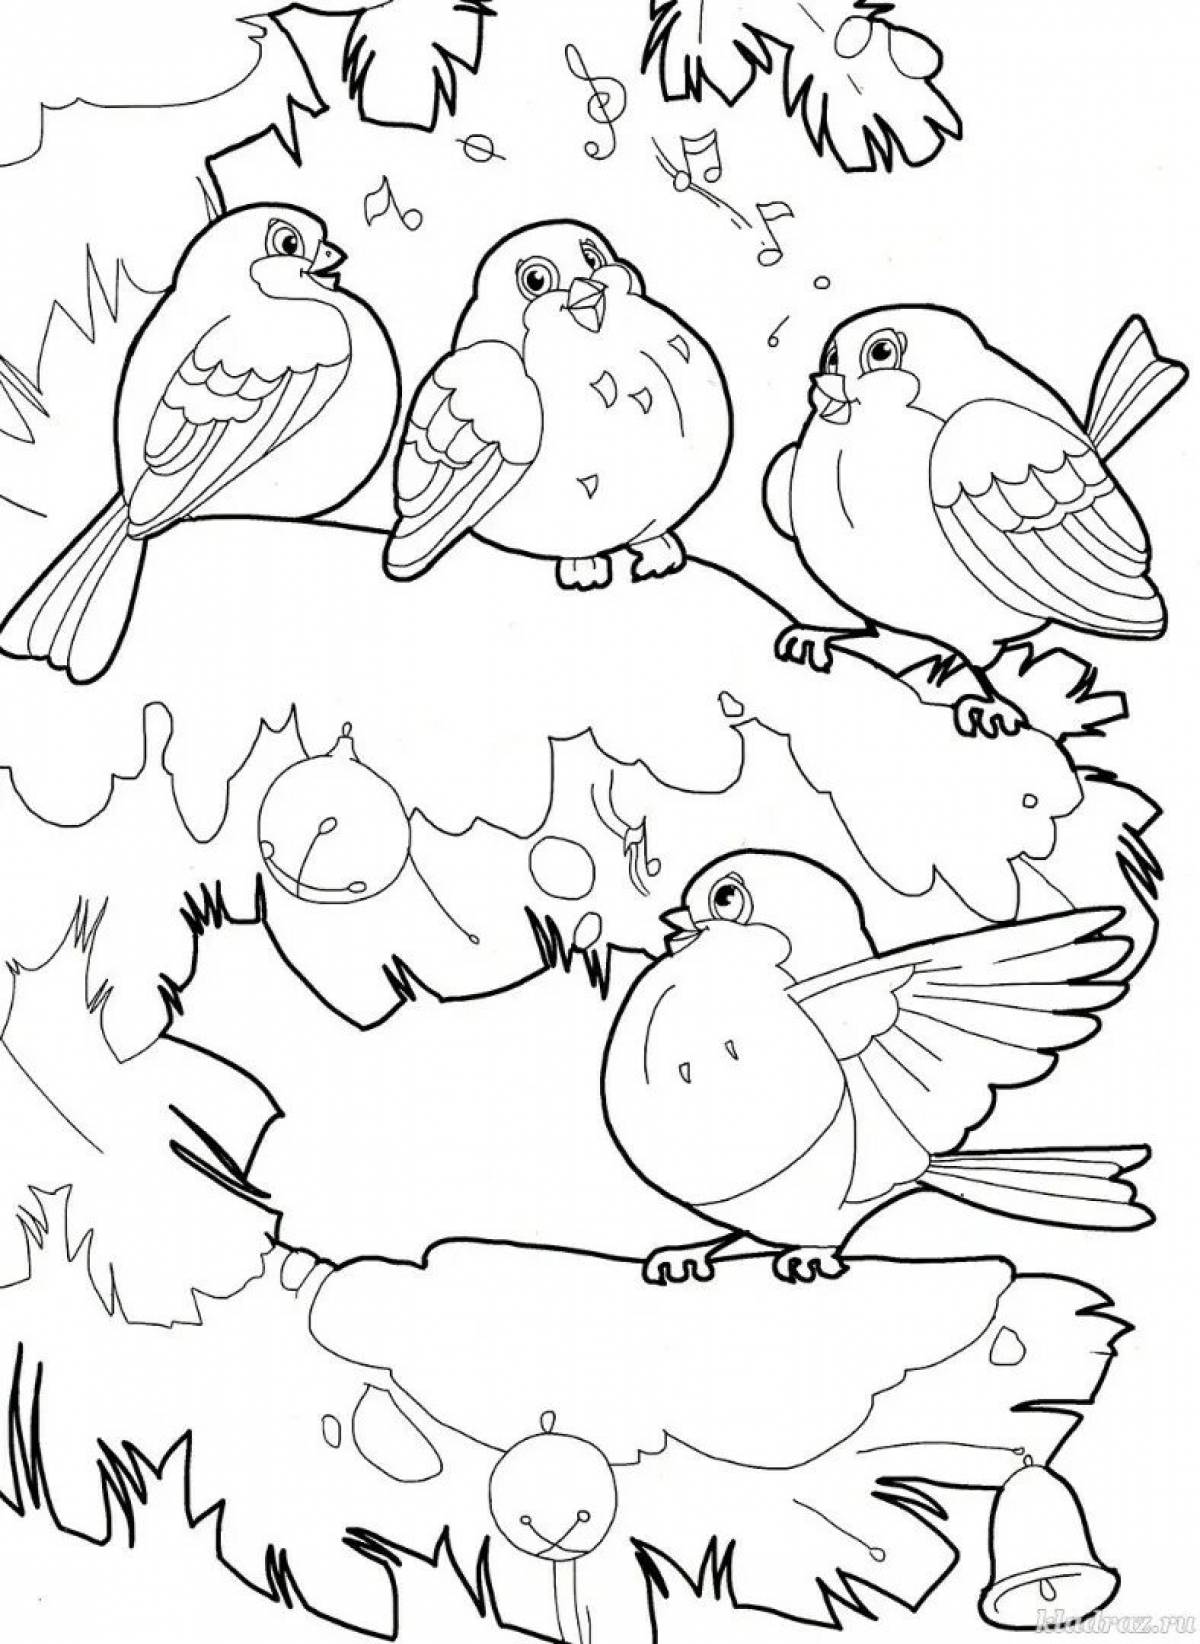 Великолепная раскраска зимних птиц для детей 6-7 лет